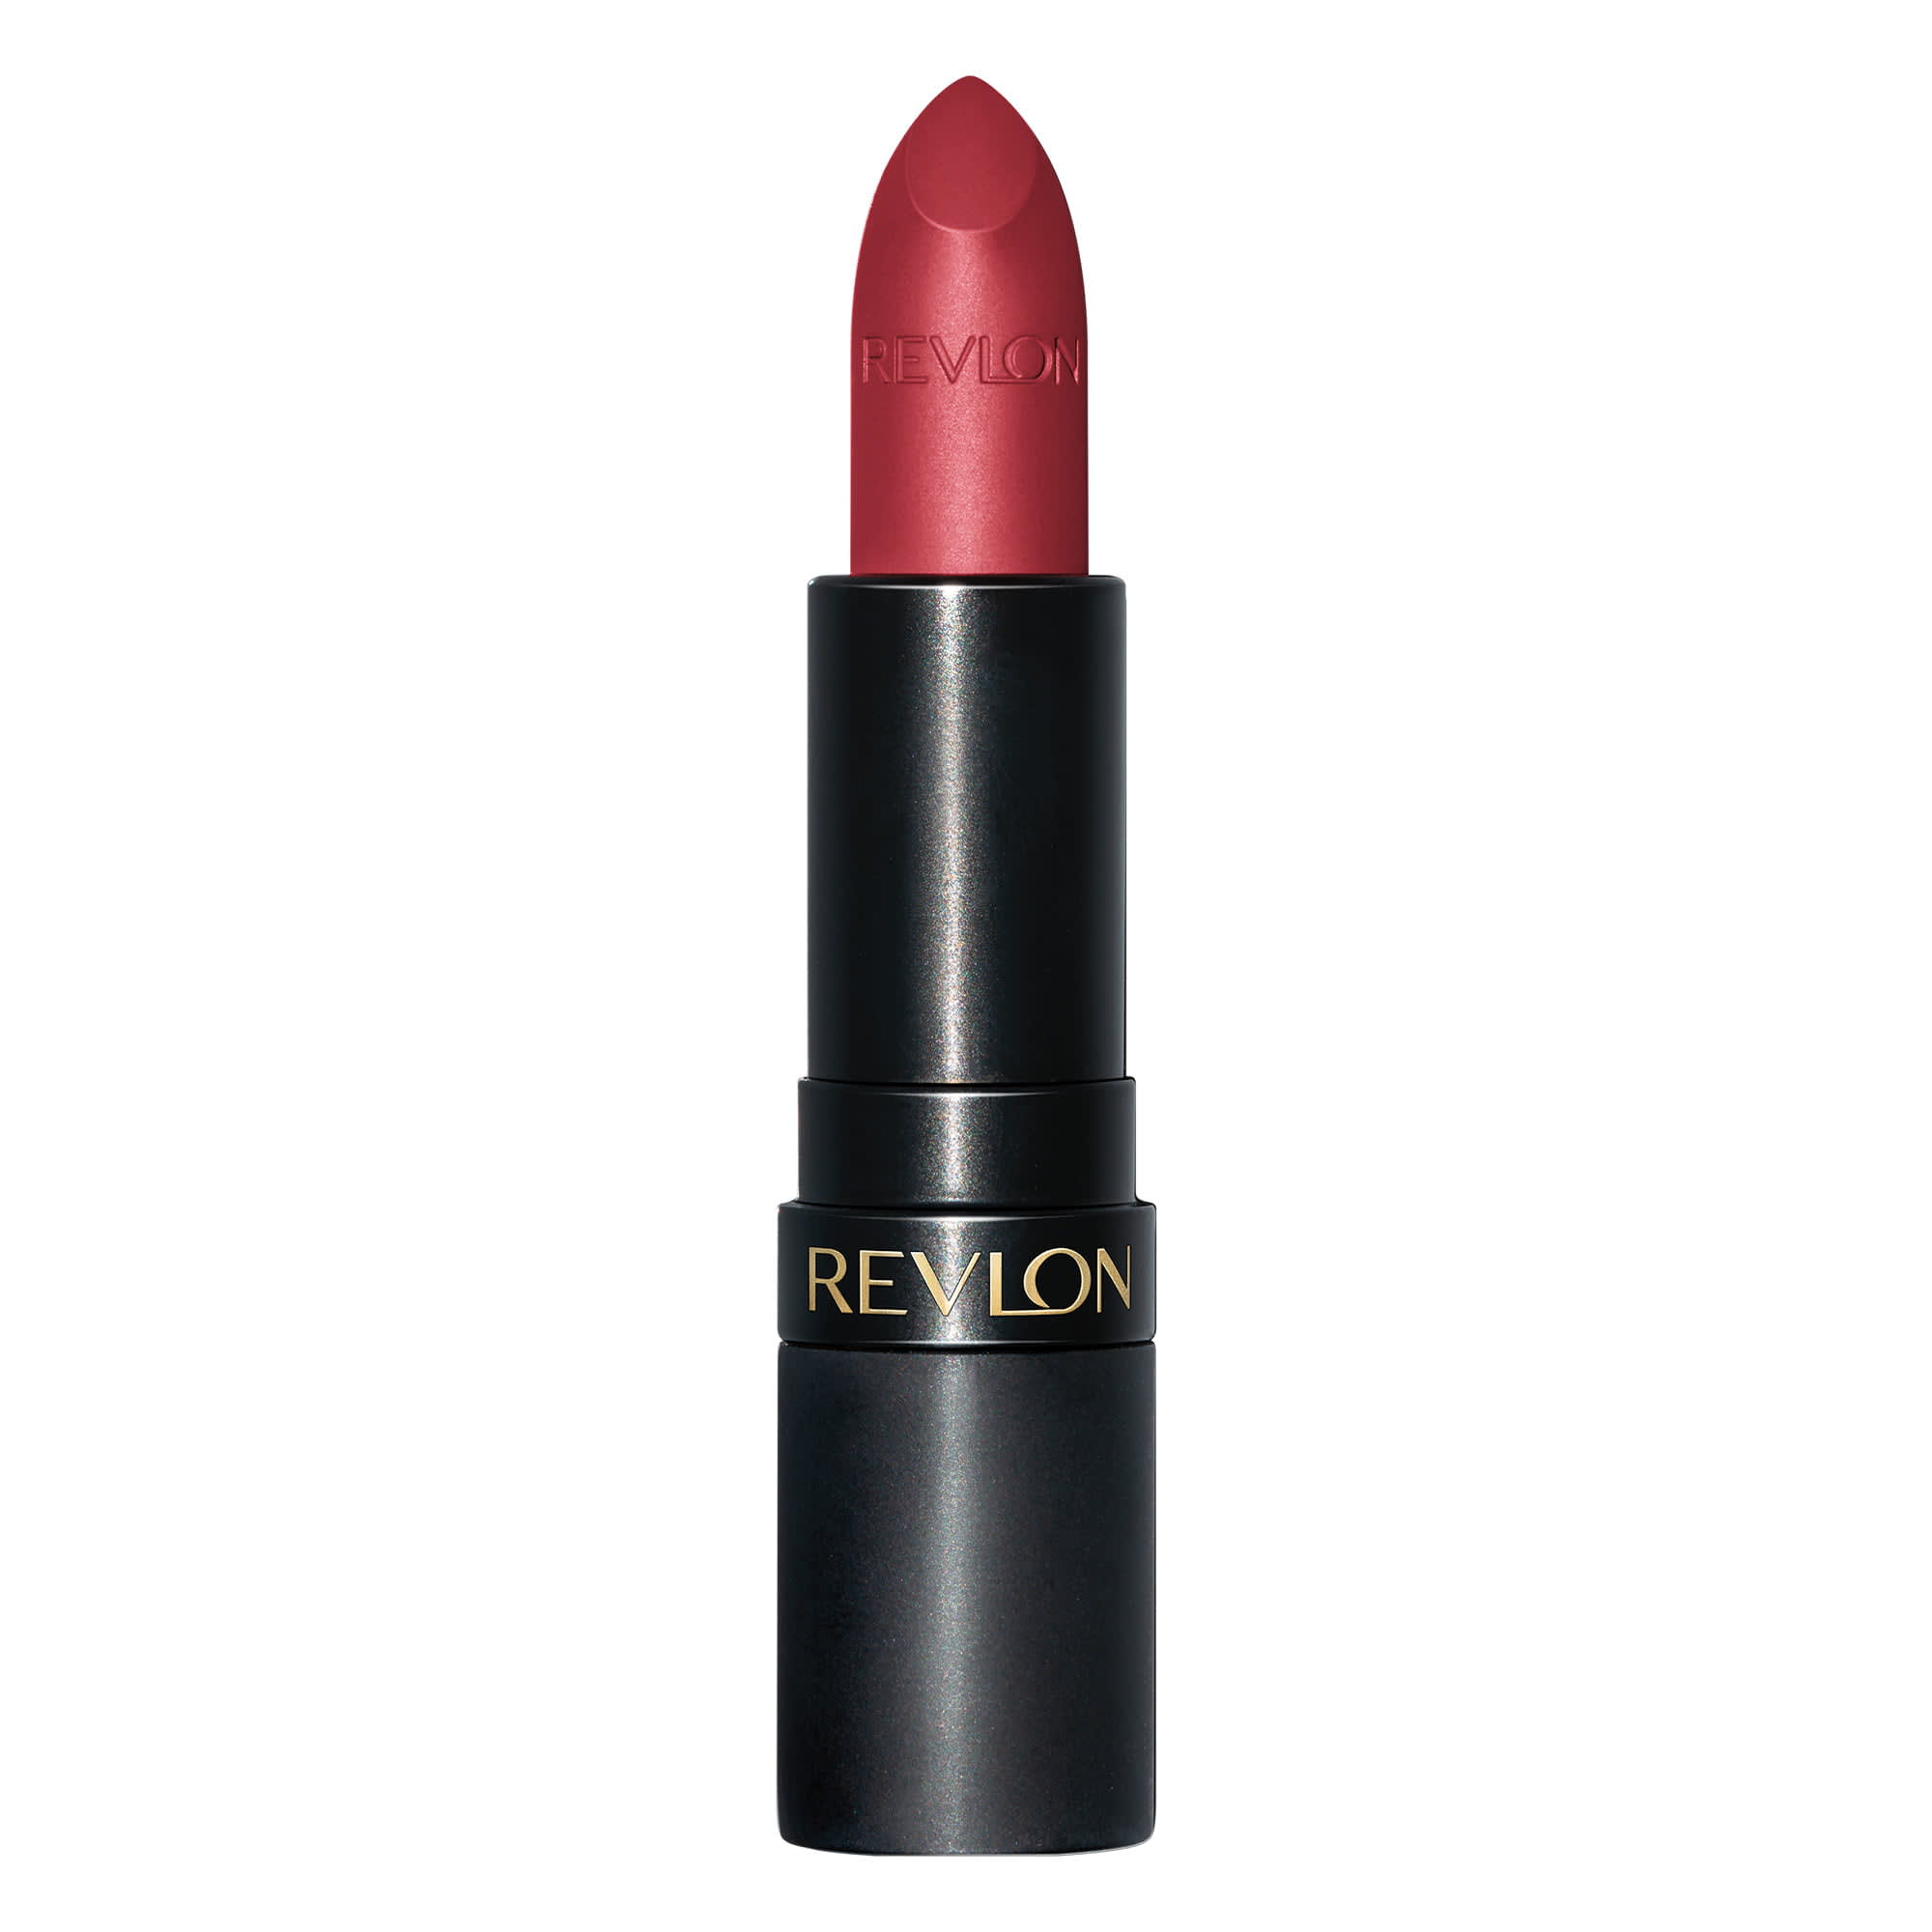 Revlon Super Lustrous Lipstick, High Impact Lipcolor with